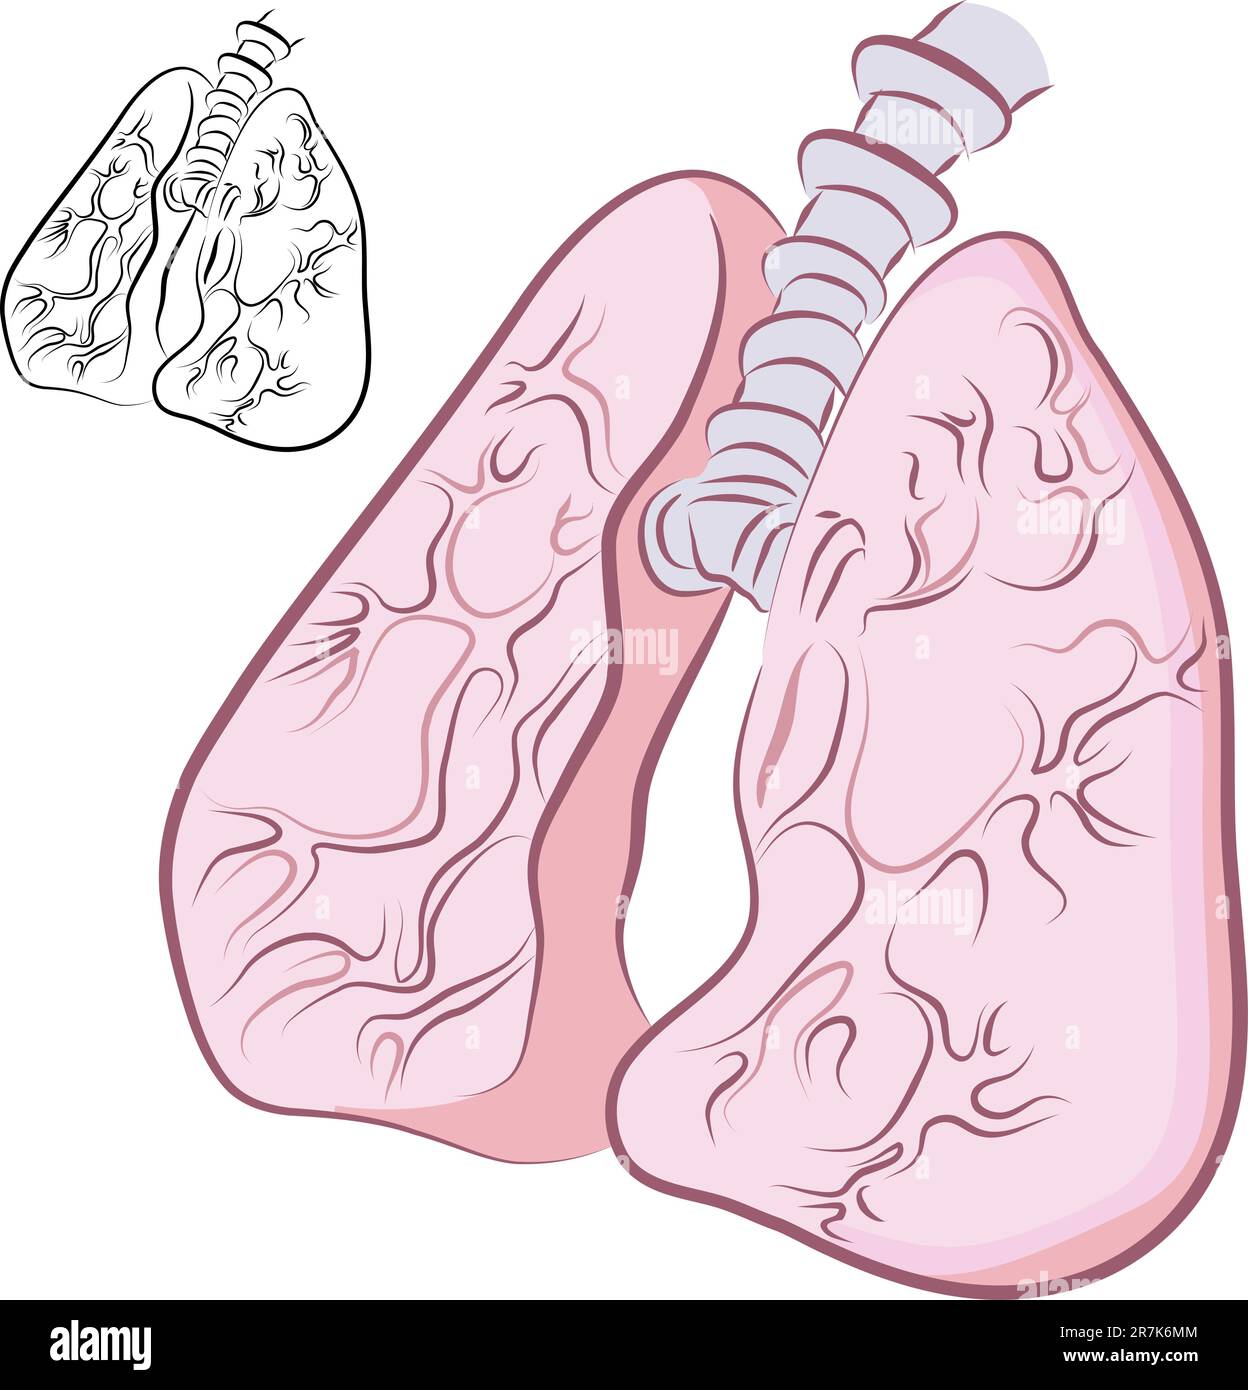 Una immagine di una serie di polmoni umani. Illustrazione Vettoriale